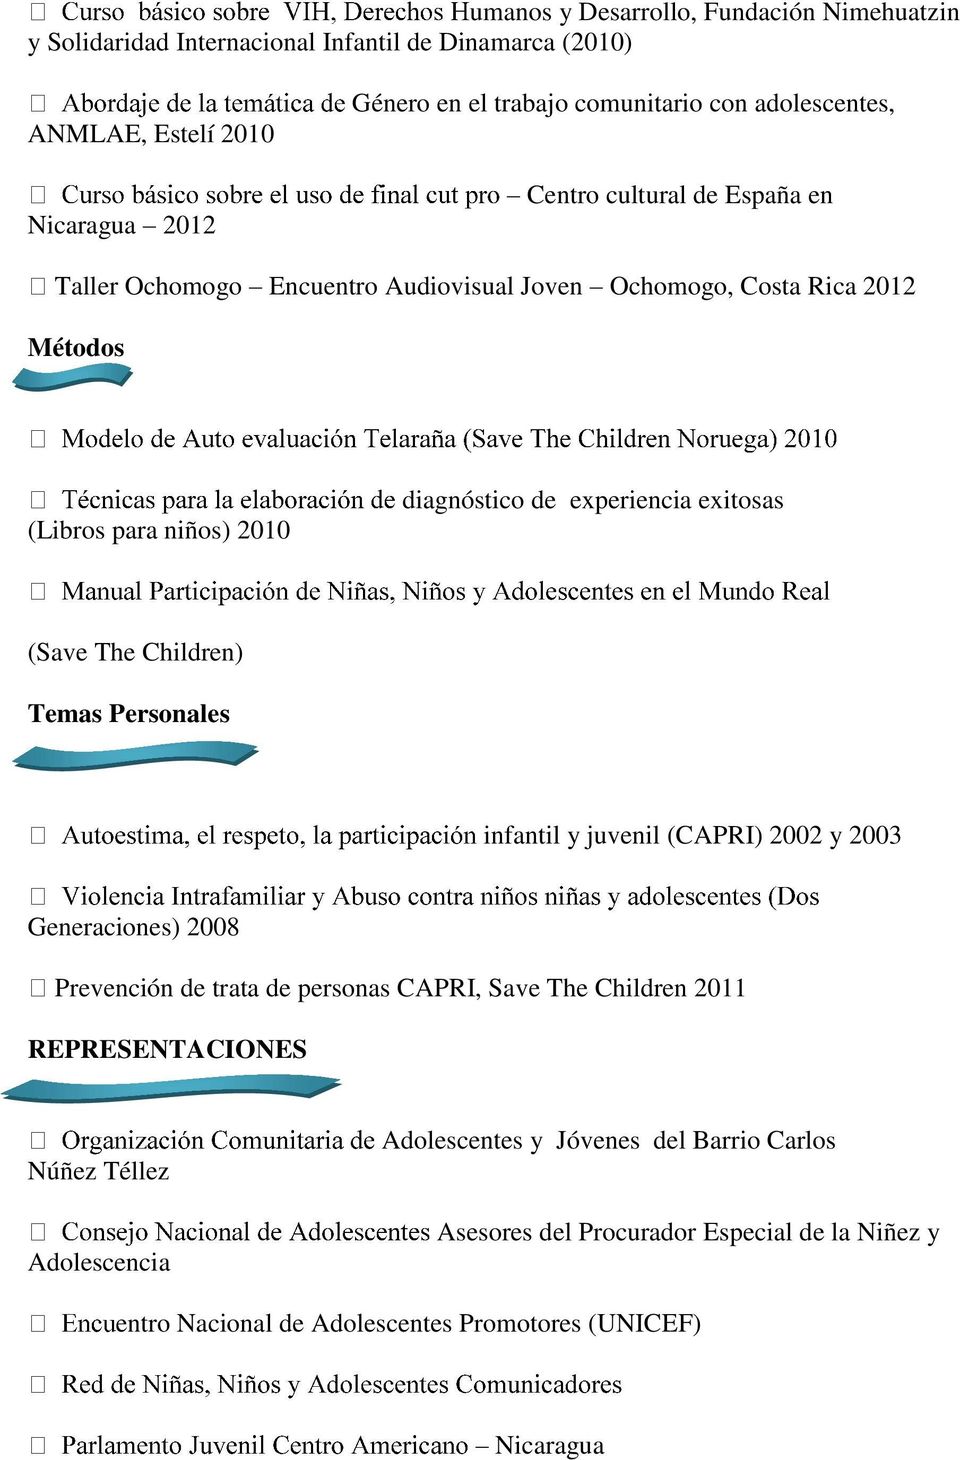 exitosas (Save The Children) Temas Personales infantil y juvenil (CAPRI) 2002 y 2003 Generaciones) 2008 Prevención de trata de personas CAPRI, Save The Children 2011